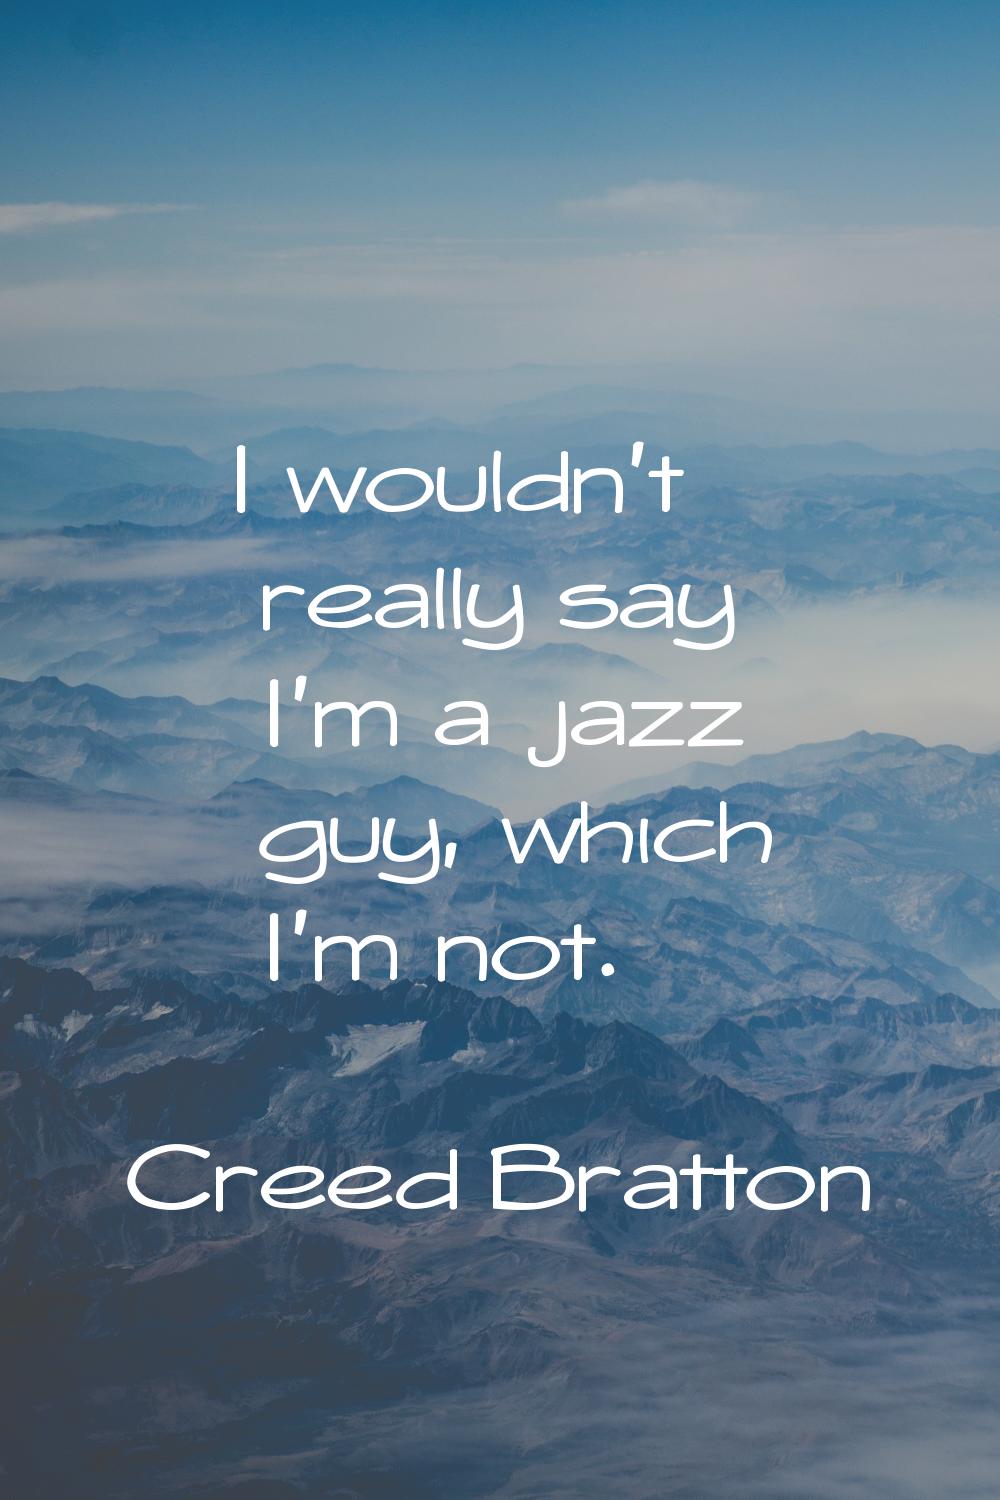 I wouldn't really say I'm a jazz guy, which I'm not.